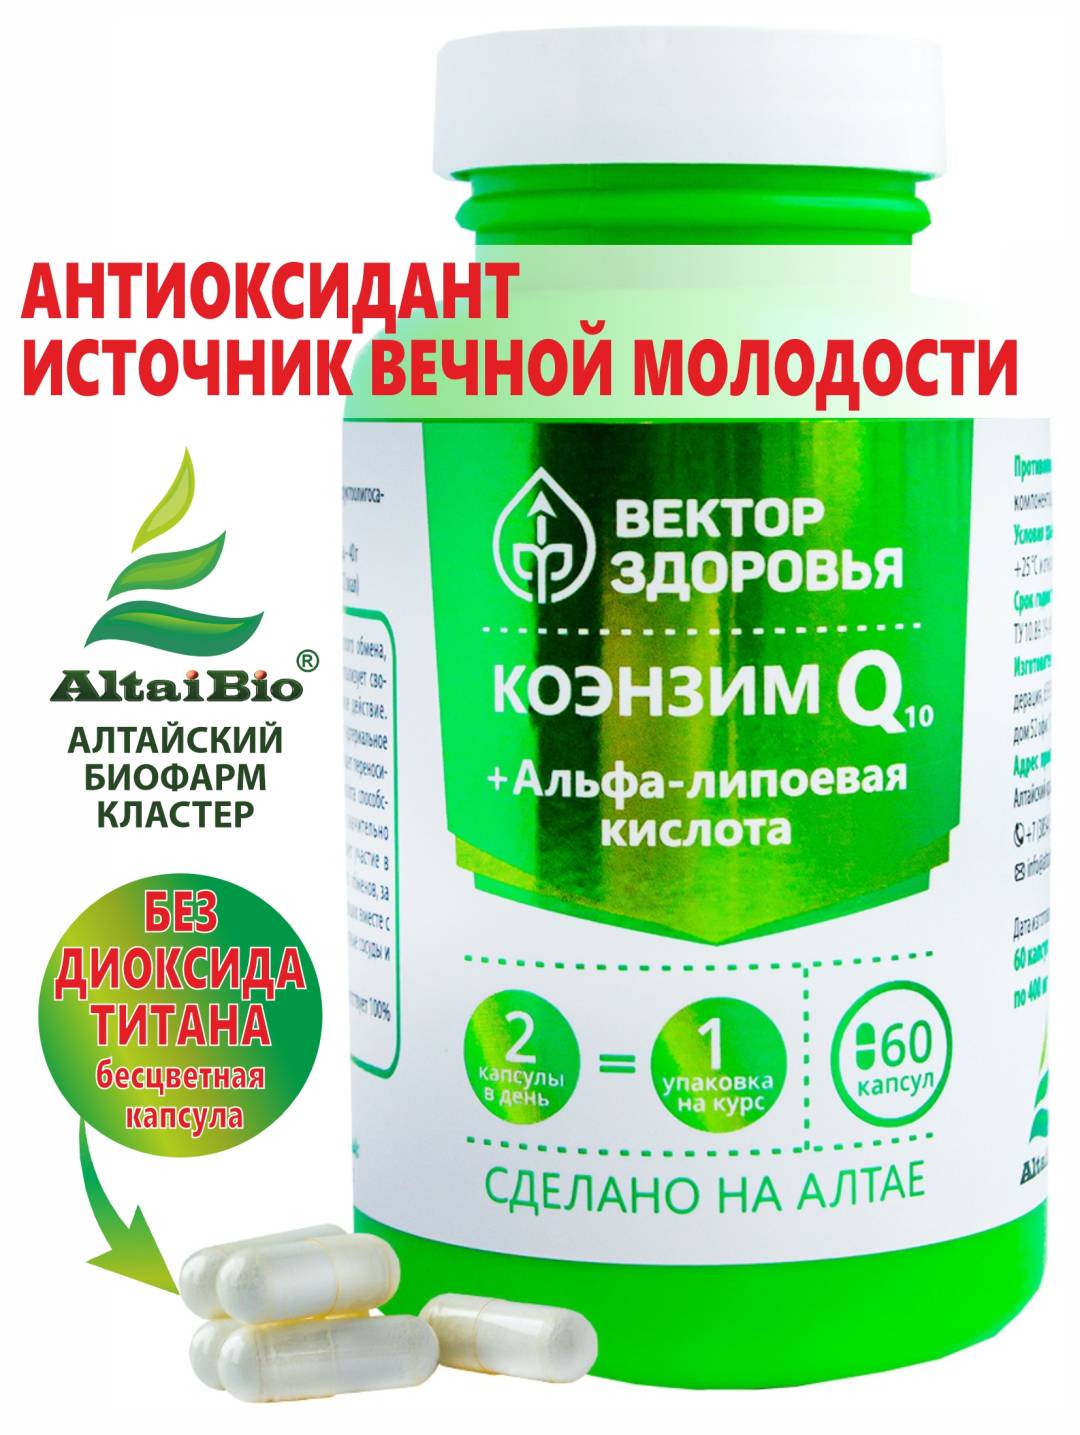 Купить онлайн Комплекс Коэнзим Q10+Альфа-липоевая кислота, 60 капсул в интернет-магазине Беришка с доставкой по Хабаровску и по России недорого.